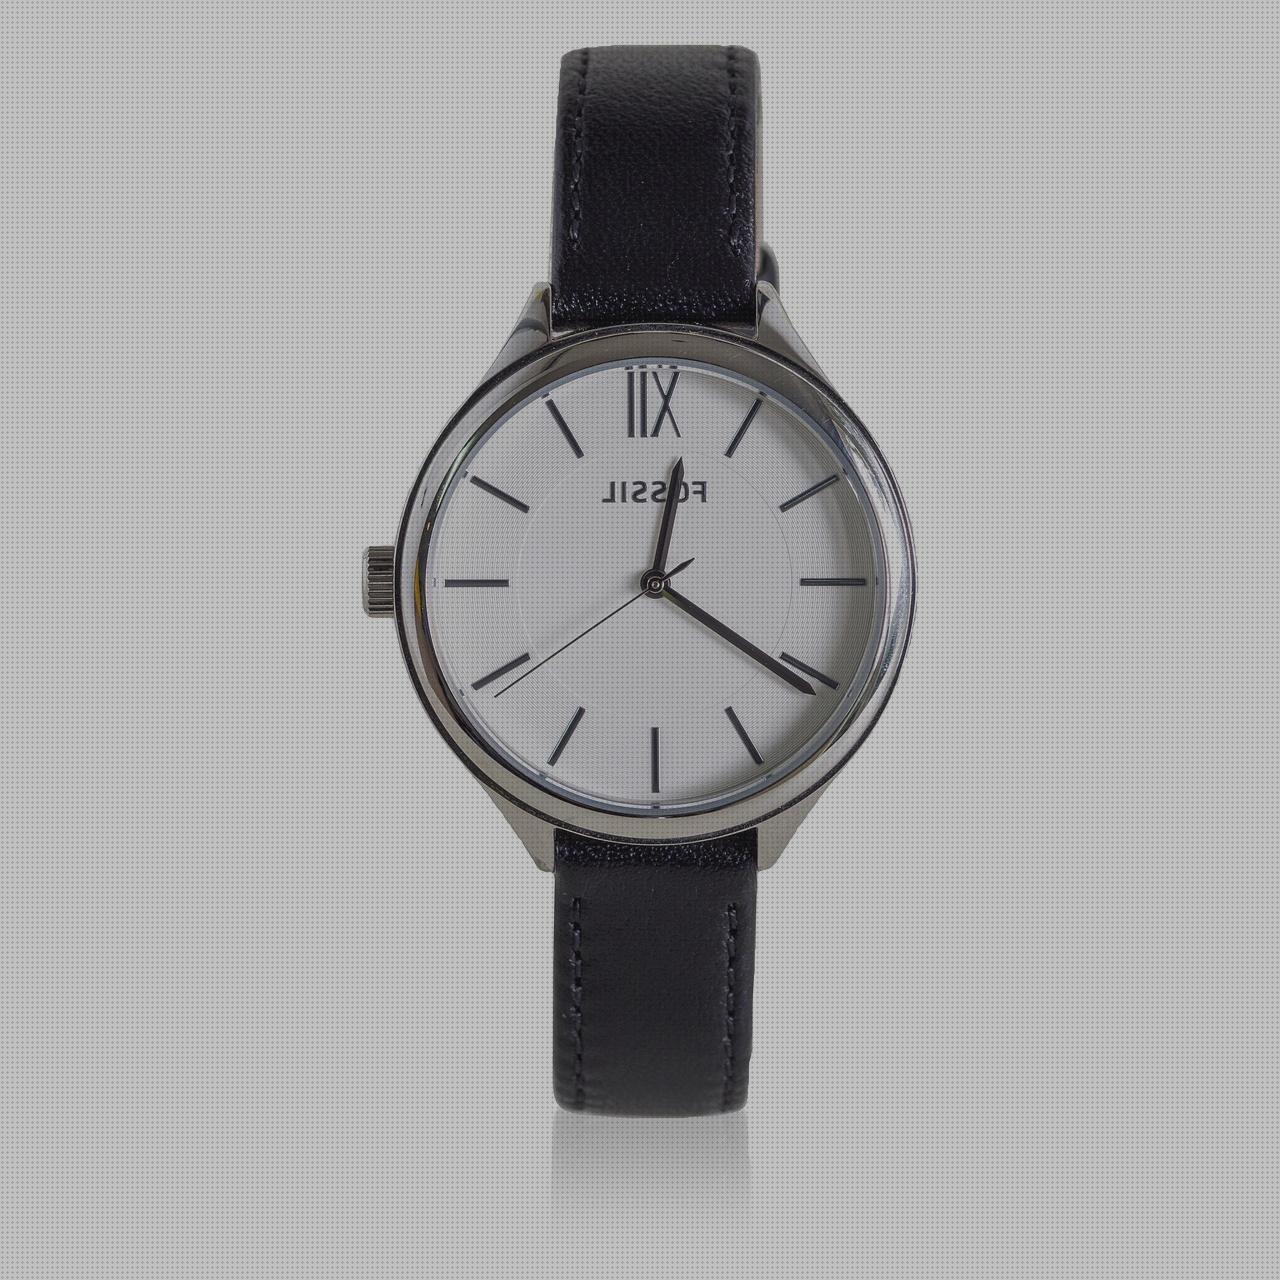 ¿Dónde poder comprar relojes cuero relojes amazon otros colores hb 230 1 34 2718 1148 489 relojes amazon pared reloj cuero negro hombre?